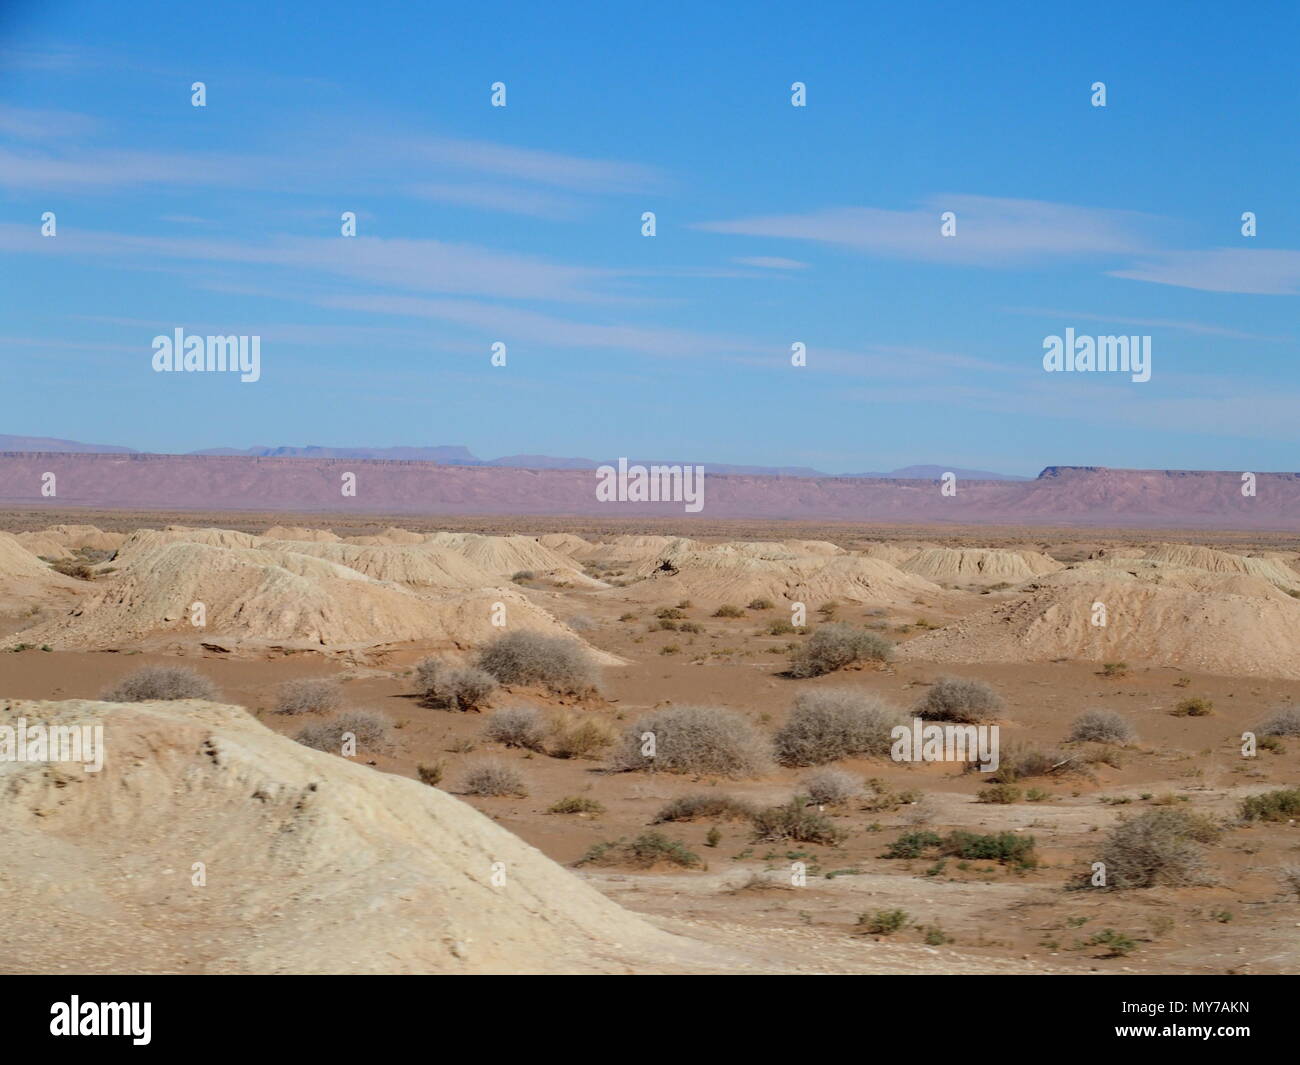 Brillante Panorama von Ketthara, das Wasser gut an afrikanischen Wüste Sahara Landschaften in der Nähe von Erfoud in Marokko mit klaren blauen Himmel in 2017 kalten sonnigen Stockfoto